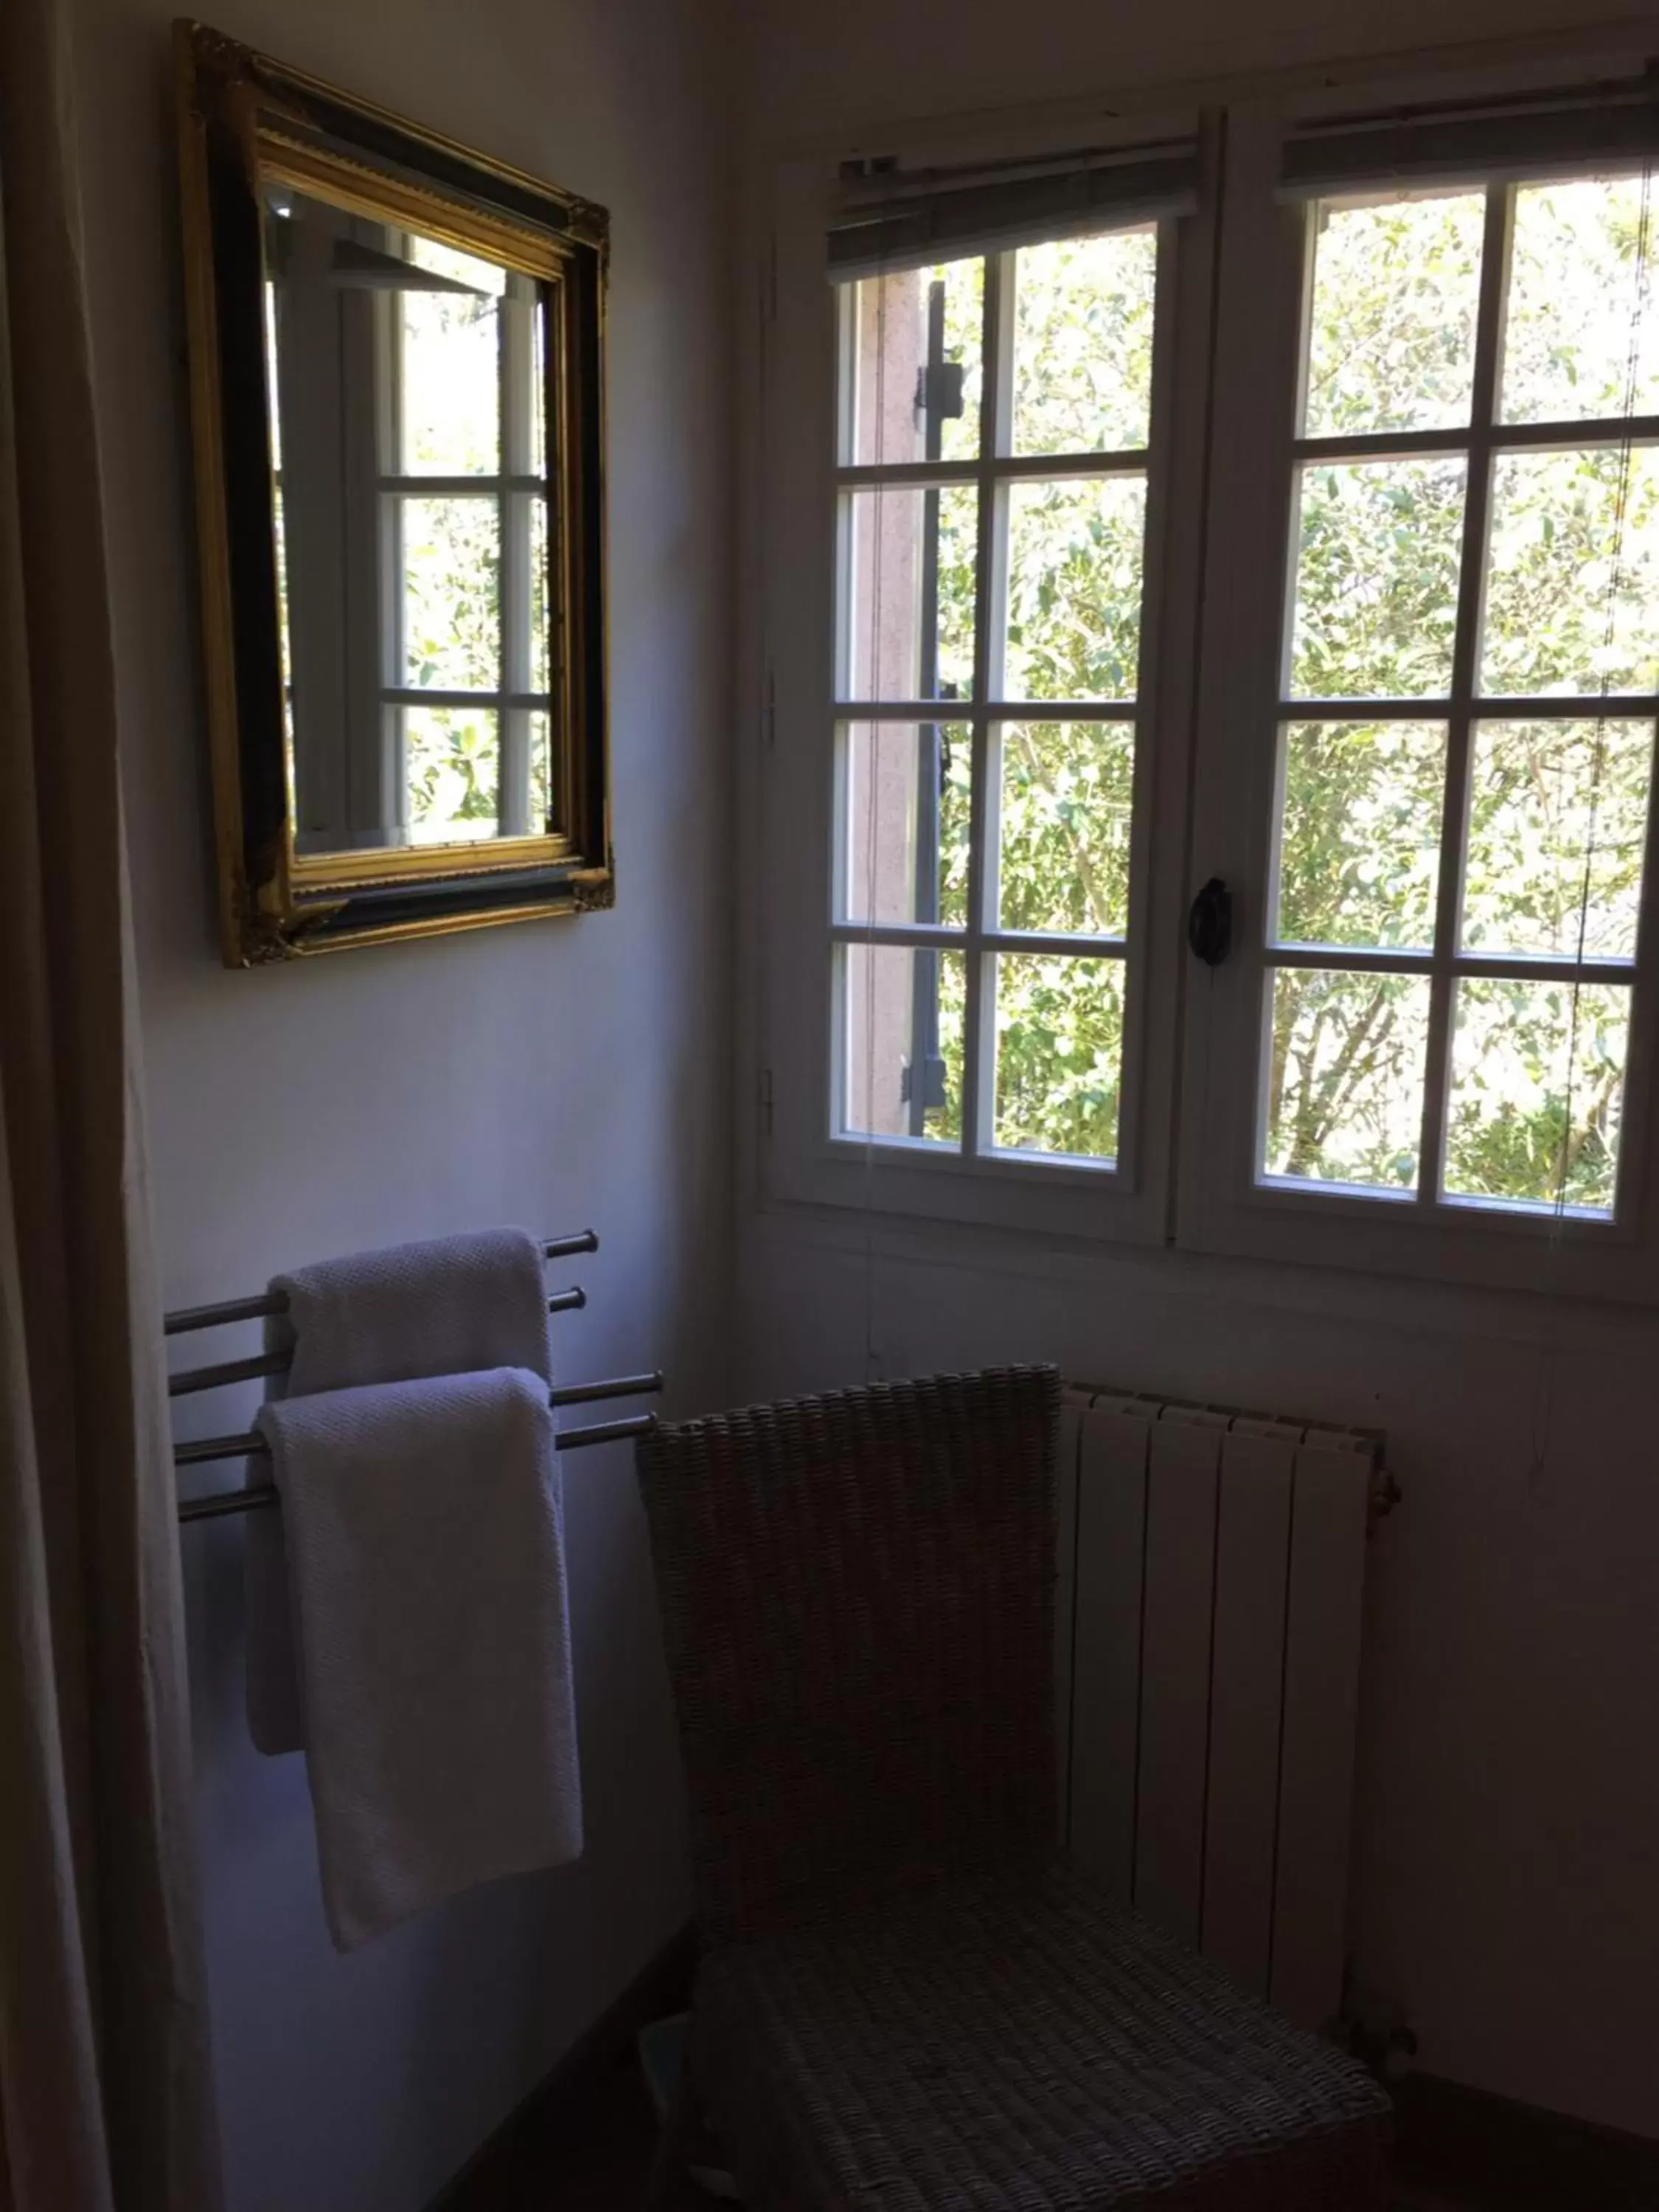 Bathroom, Seating Area in Le Mas de Marie